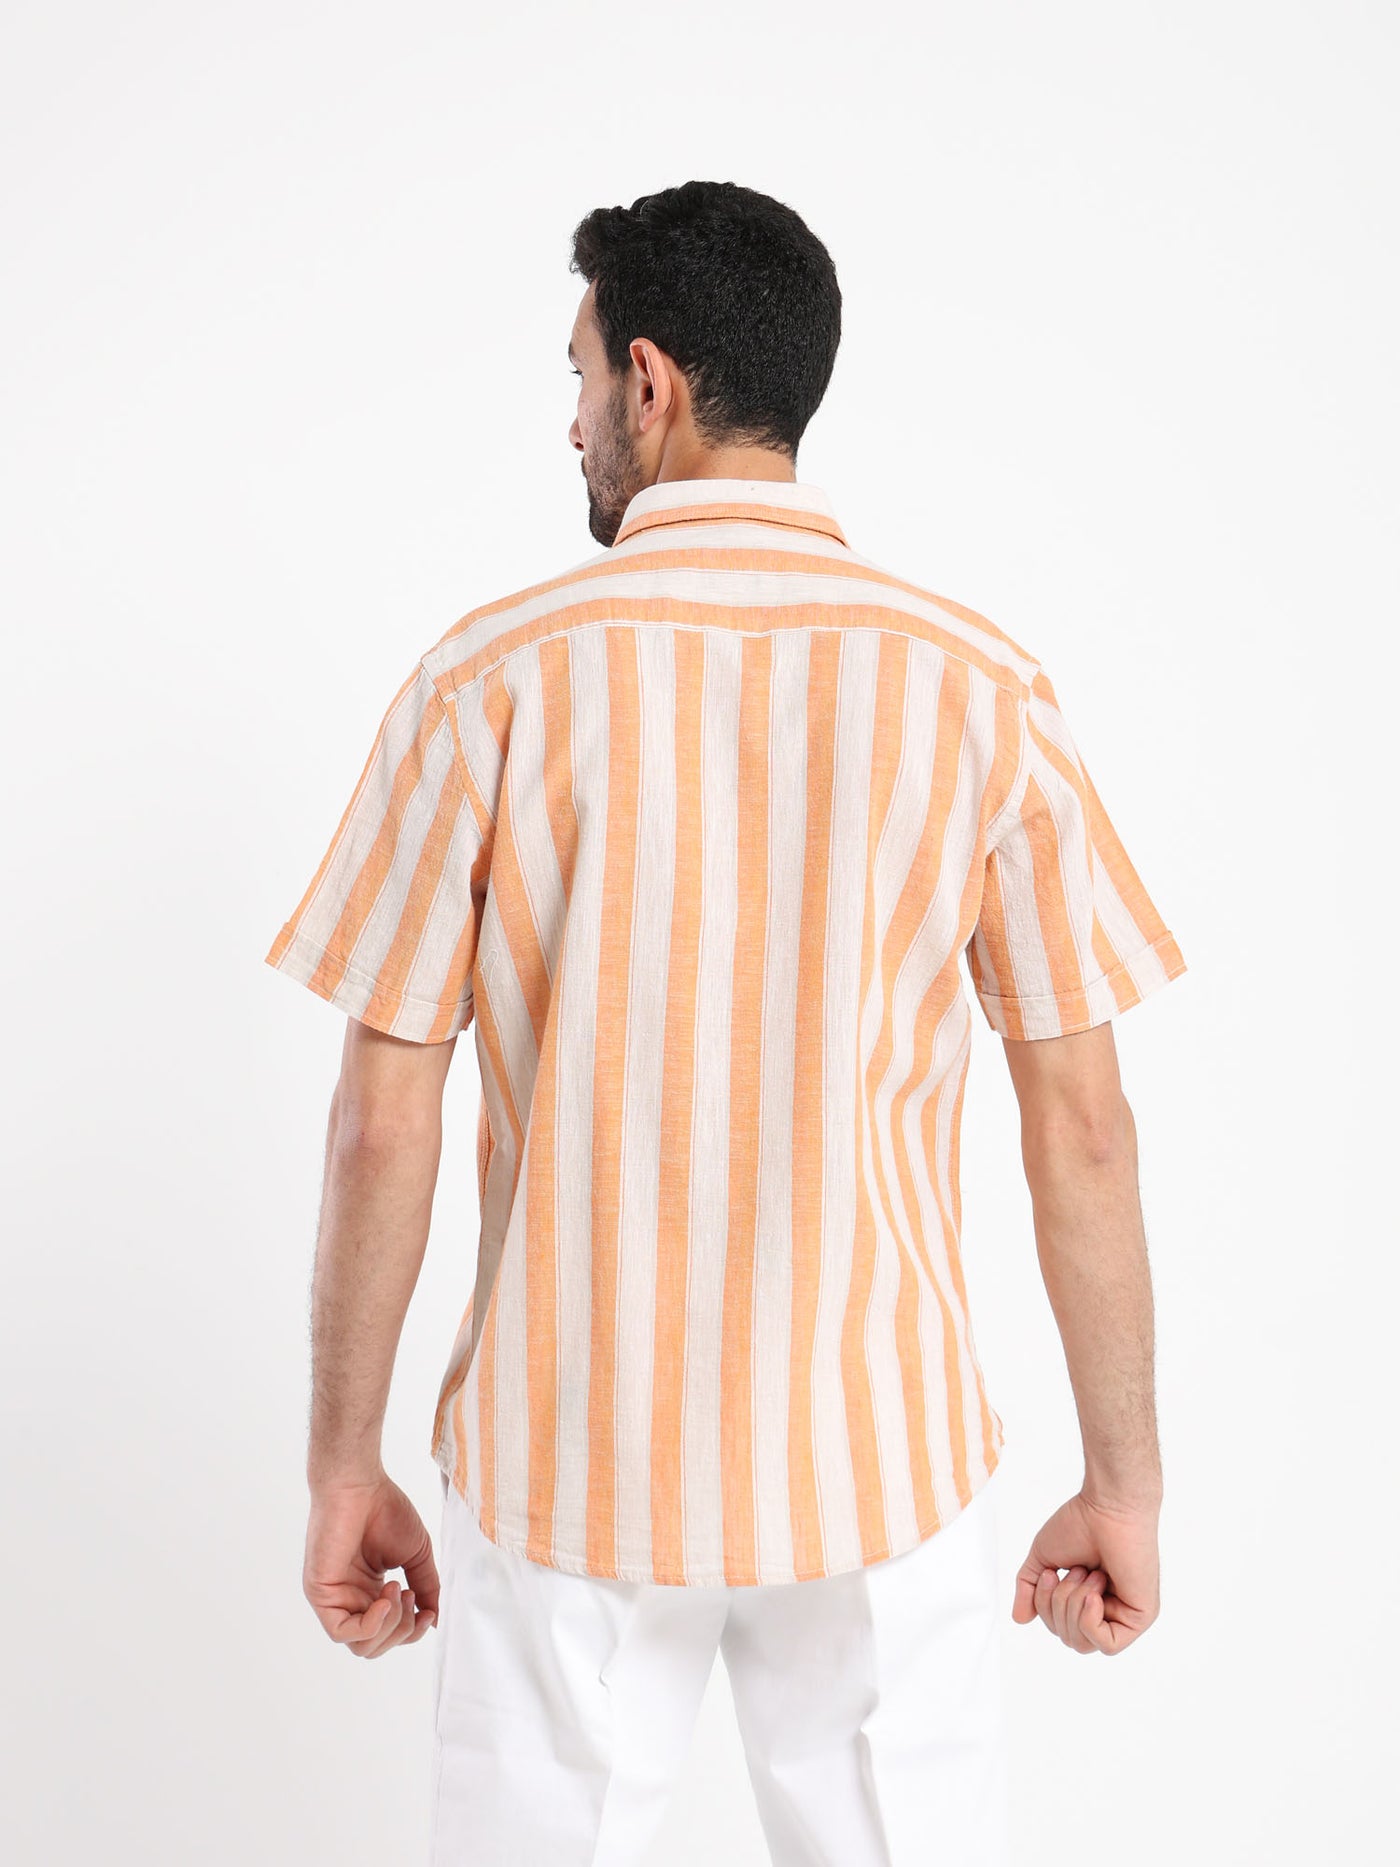 Shirt - Striped - Linen - Short Sleeves